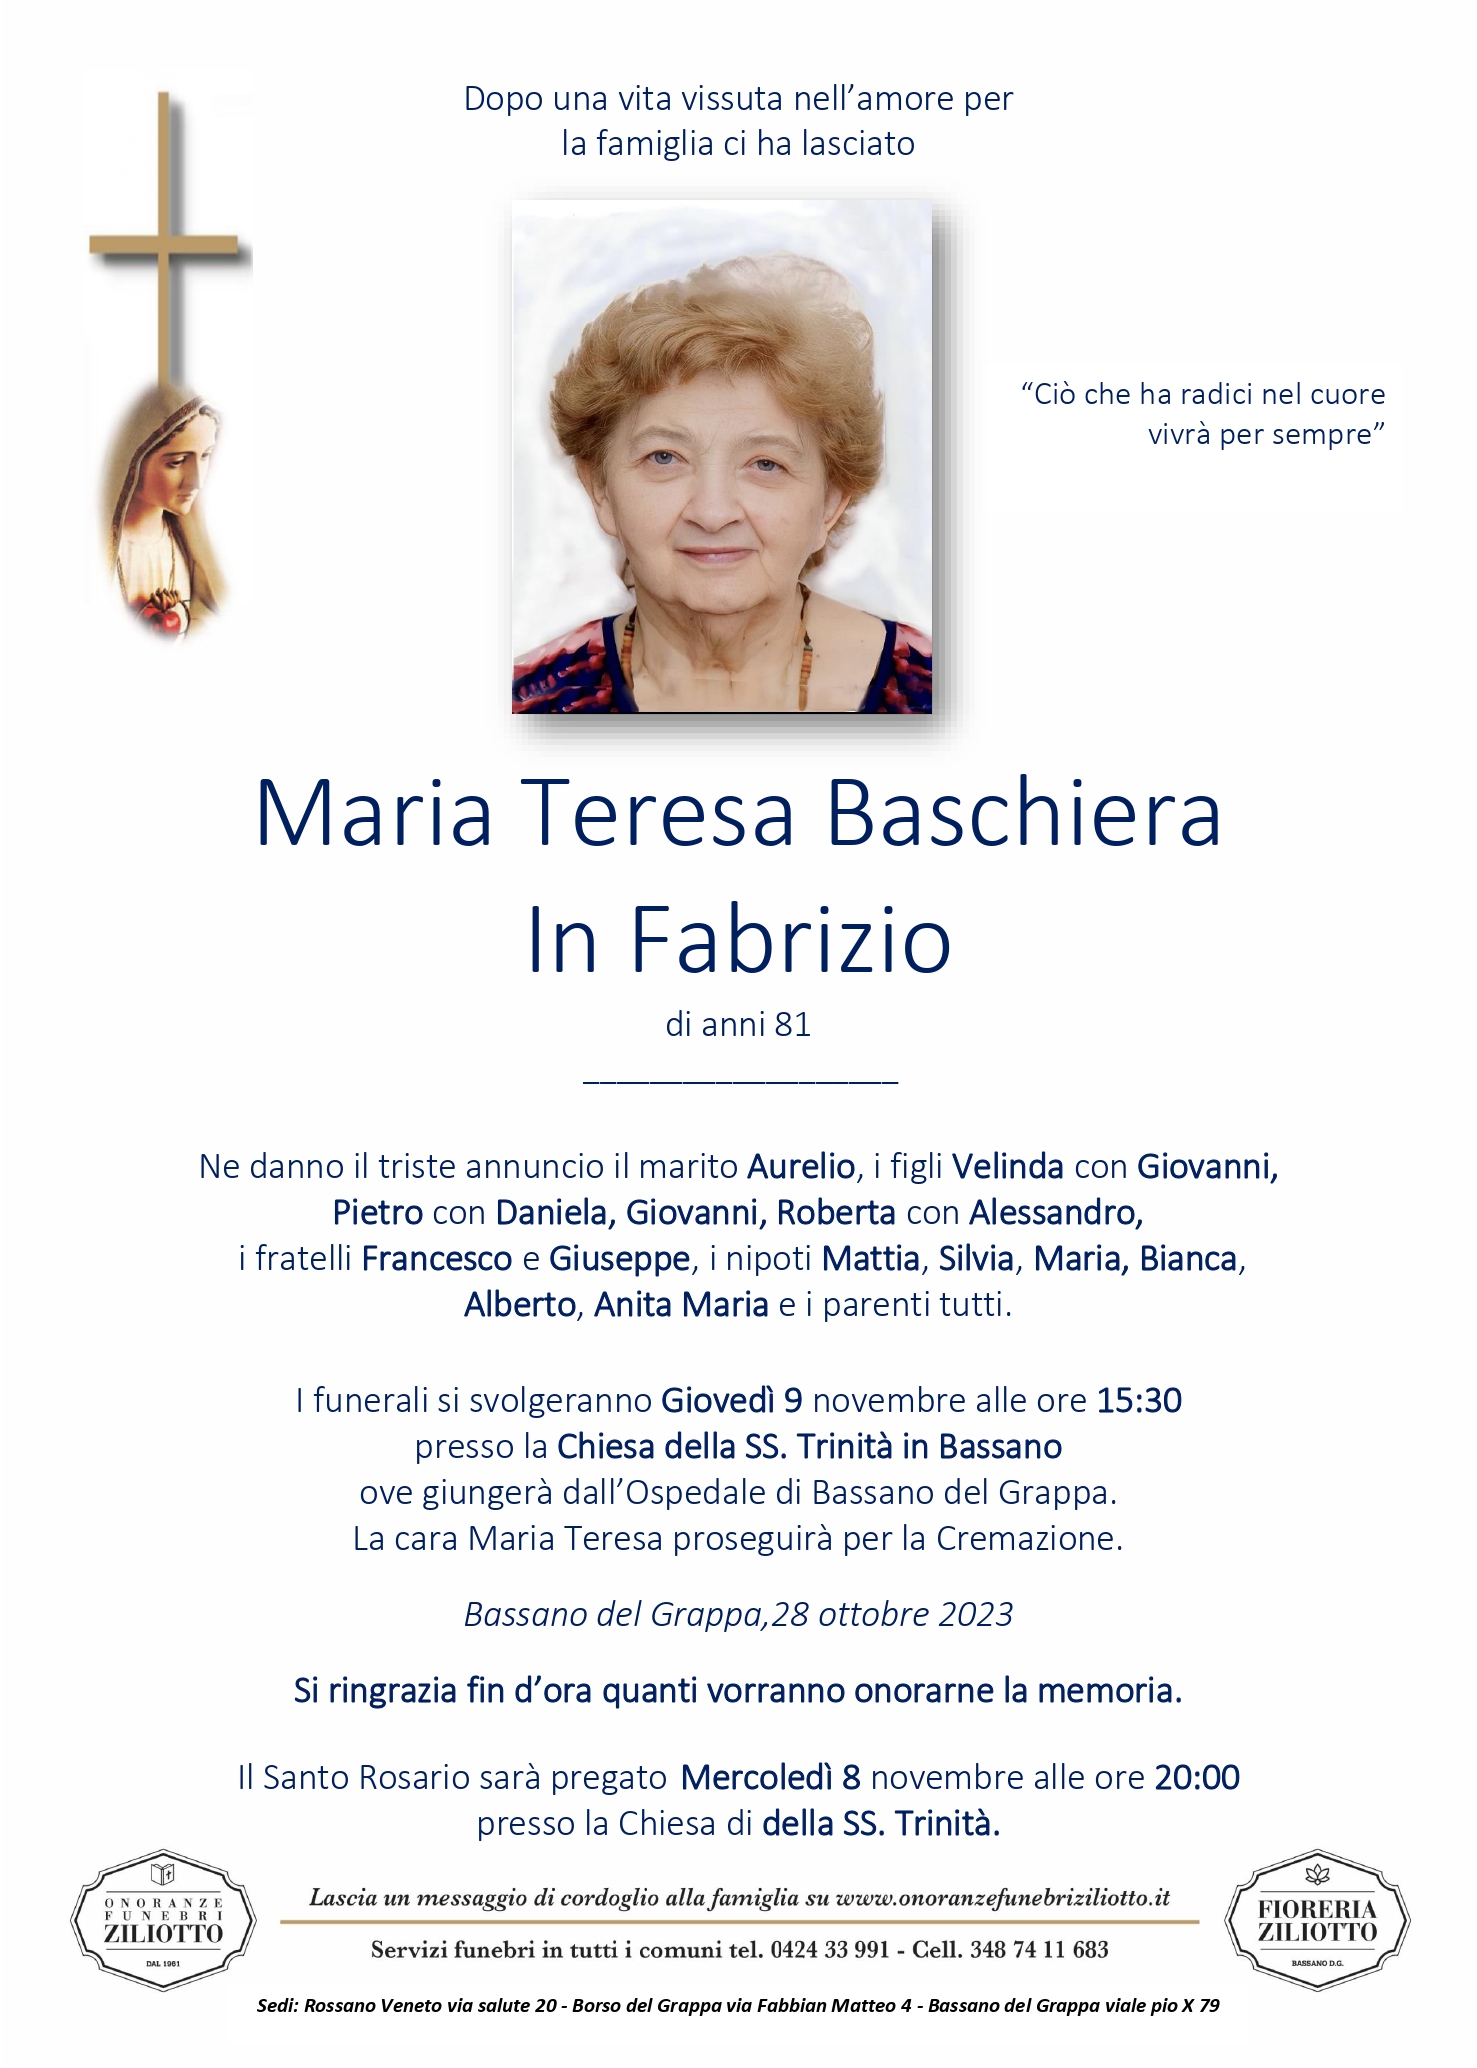 Maria Teresa Baschiera - 81 anni - Bassano del Grappa